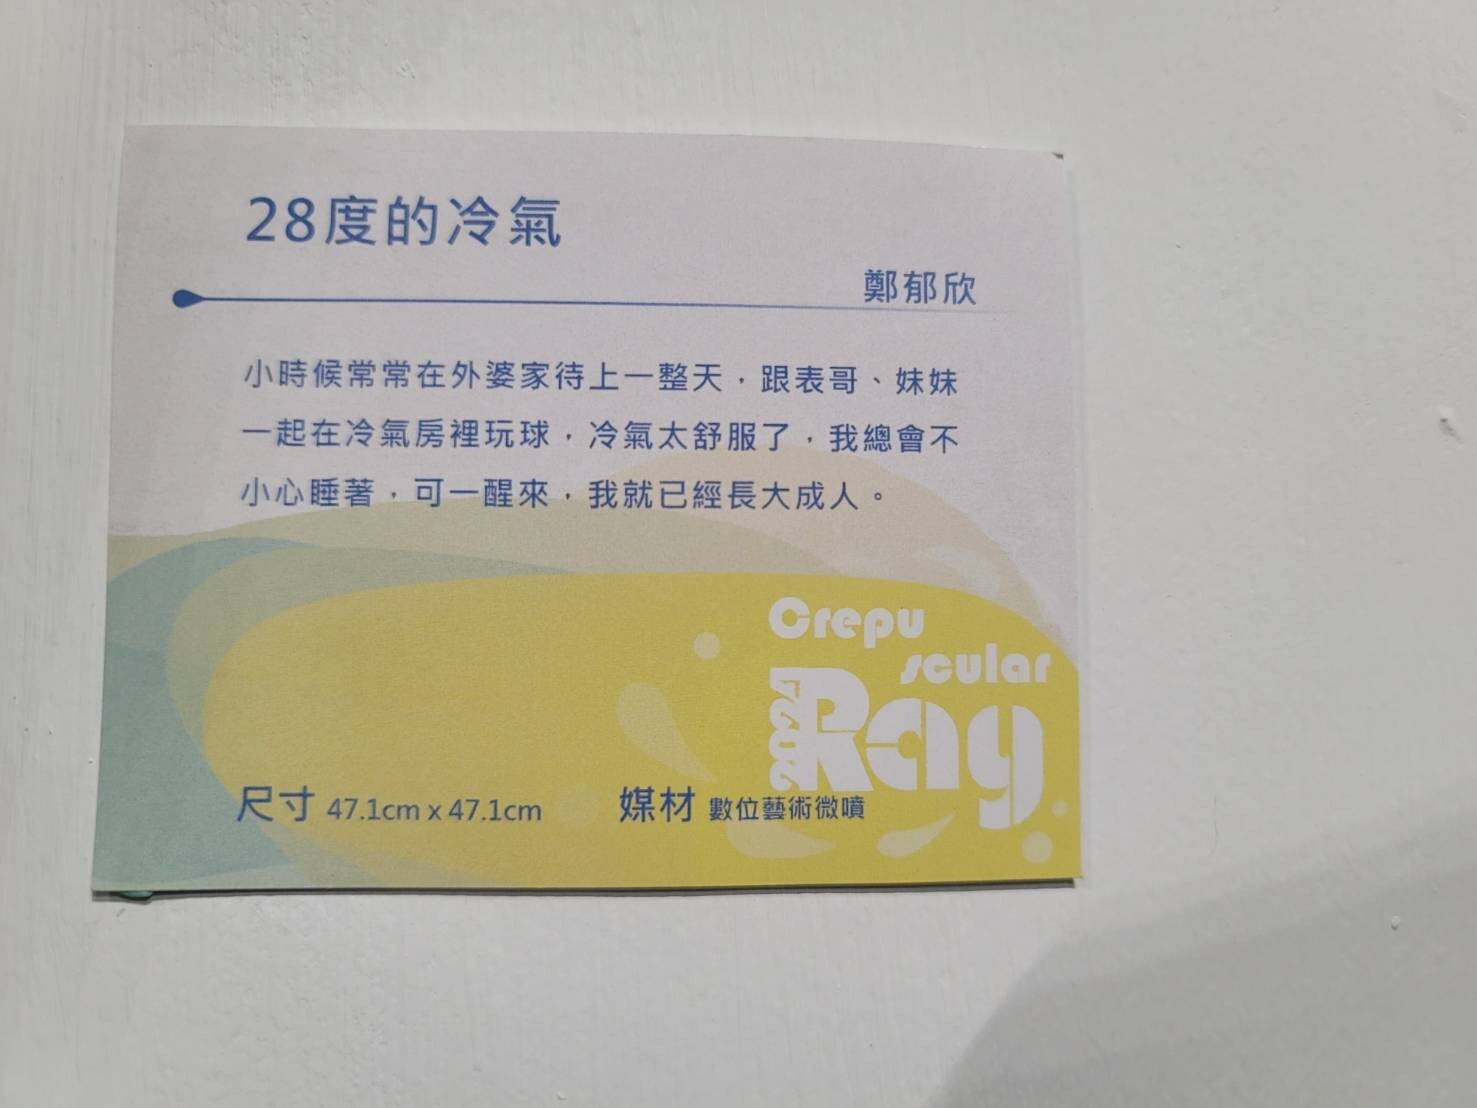 ✨《曙暮暉》Crepuscular Ray-台南應用科技大學美術系113級畢業展開幕